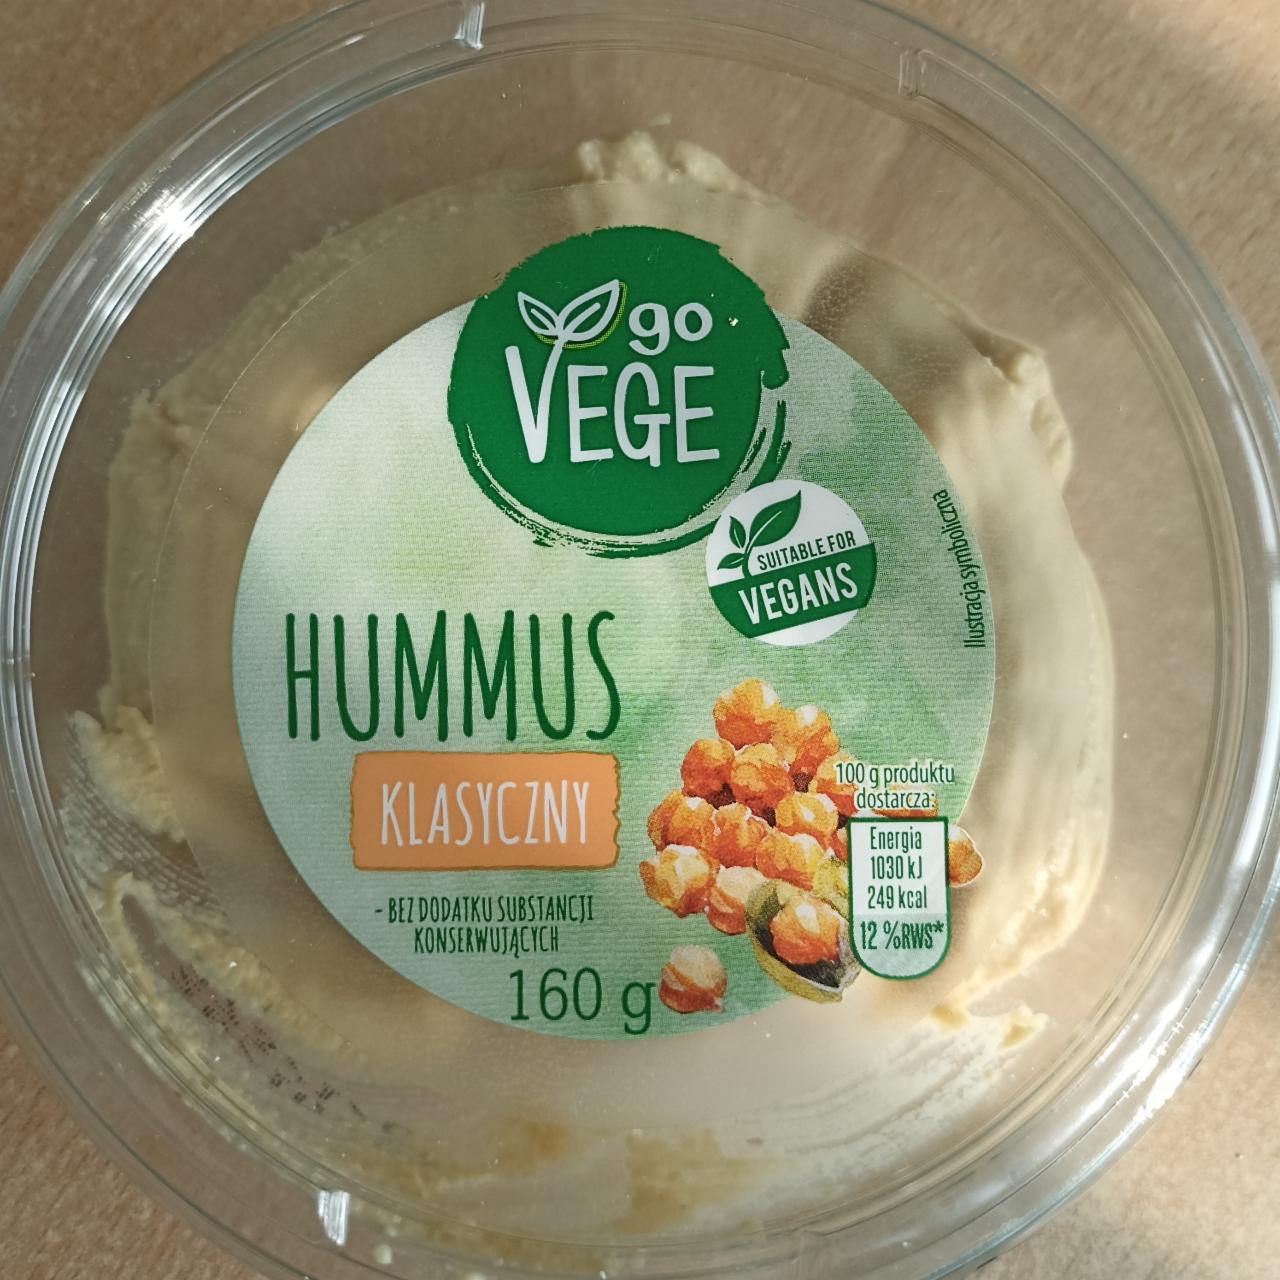 Zdjęcia - Hummus klasyczny go vege